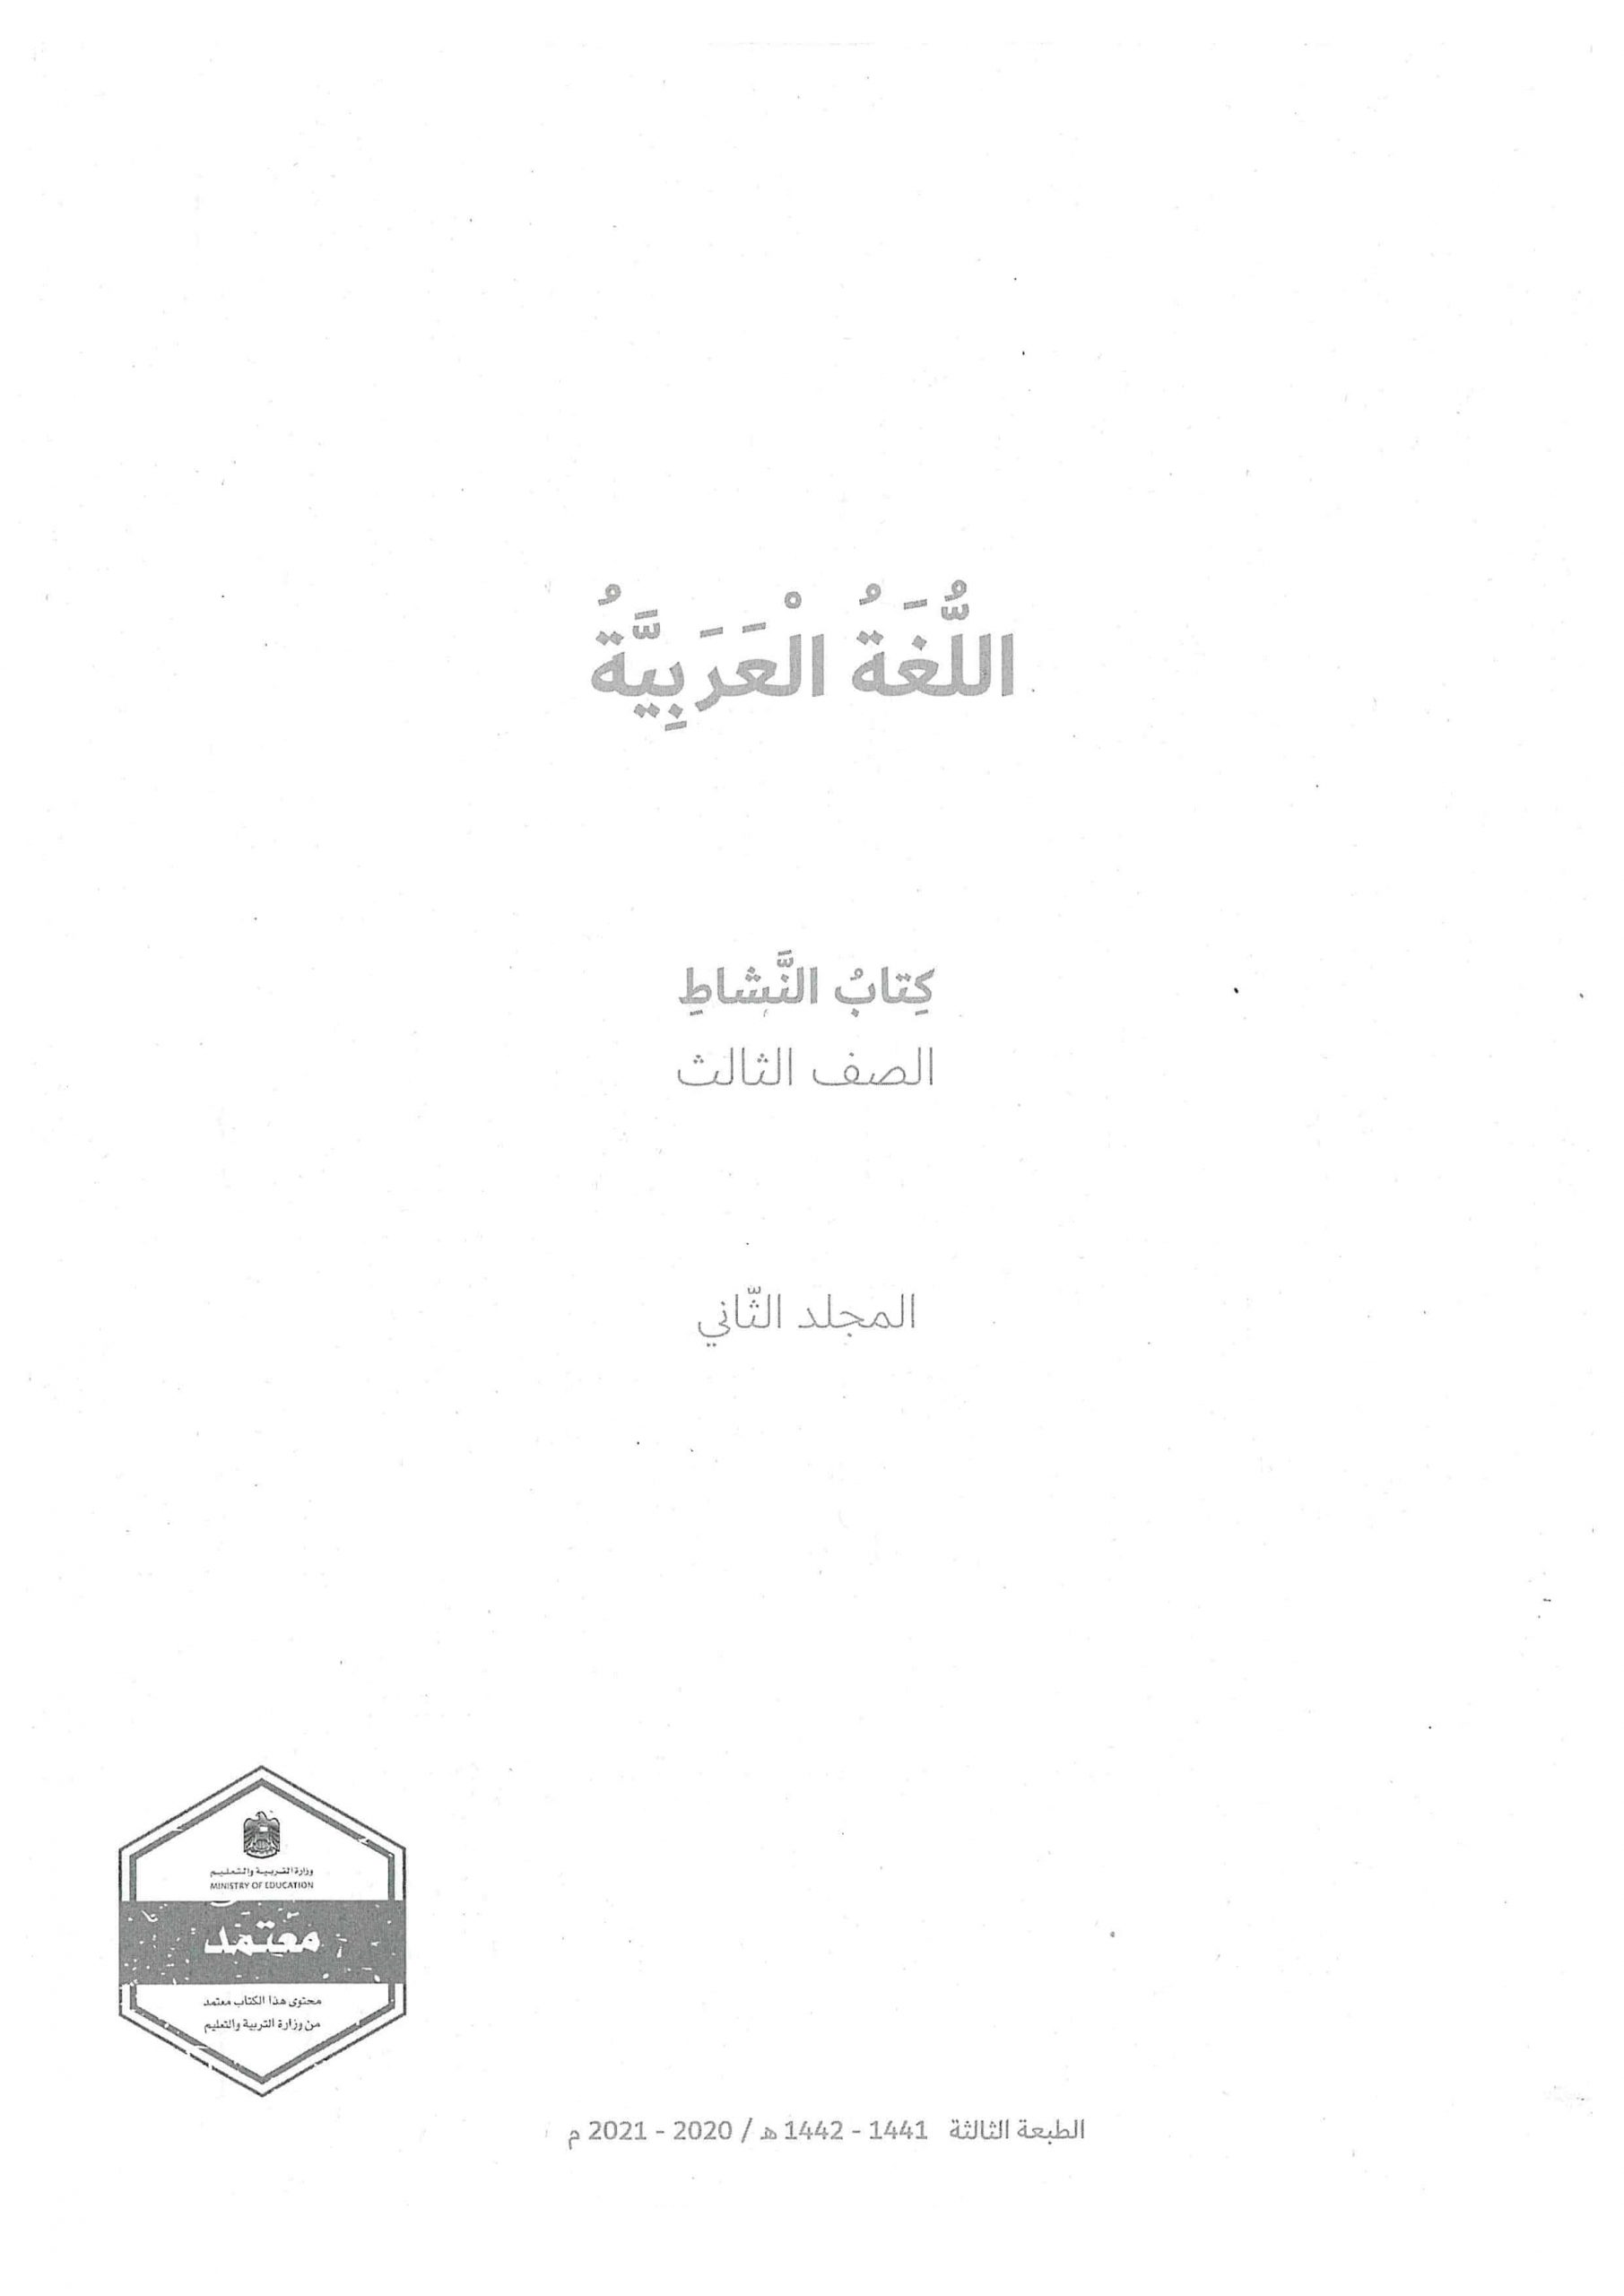 كتاب النشاط الفصل الدراسي الثالث 2020-2021 الصف الثالث مادة اللغة العربية 